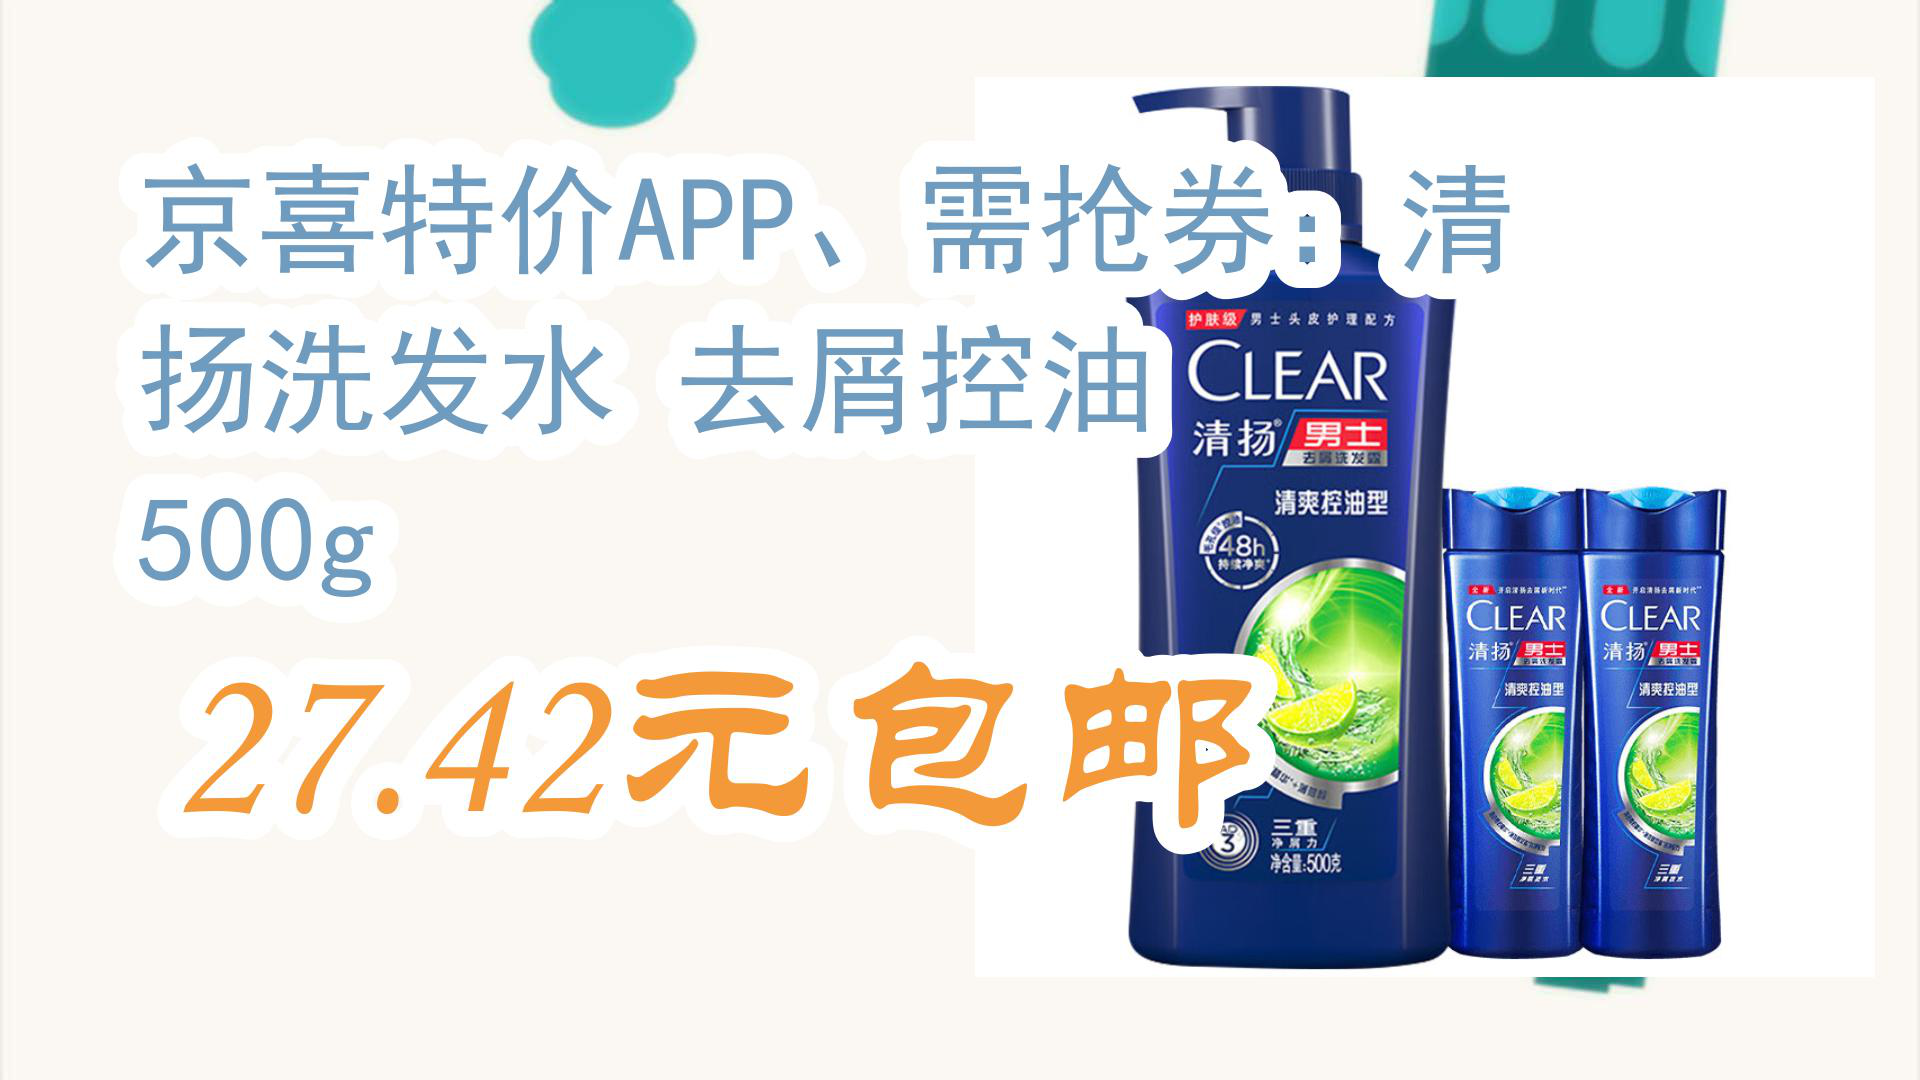 【京东暑期必备】京喜特价app,需抢券:清扬洗发水 去屑控油 500g 27